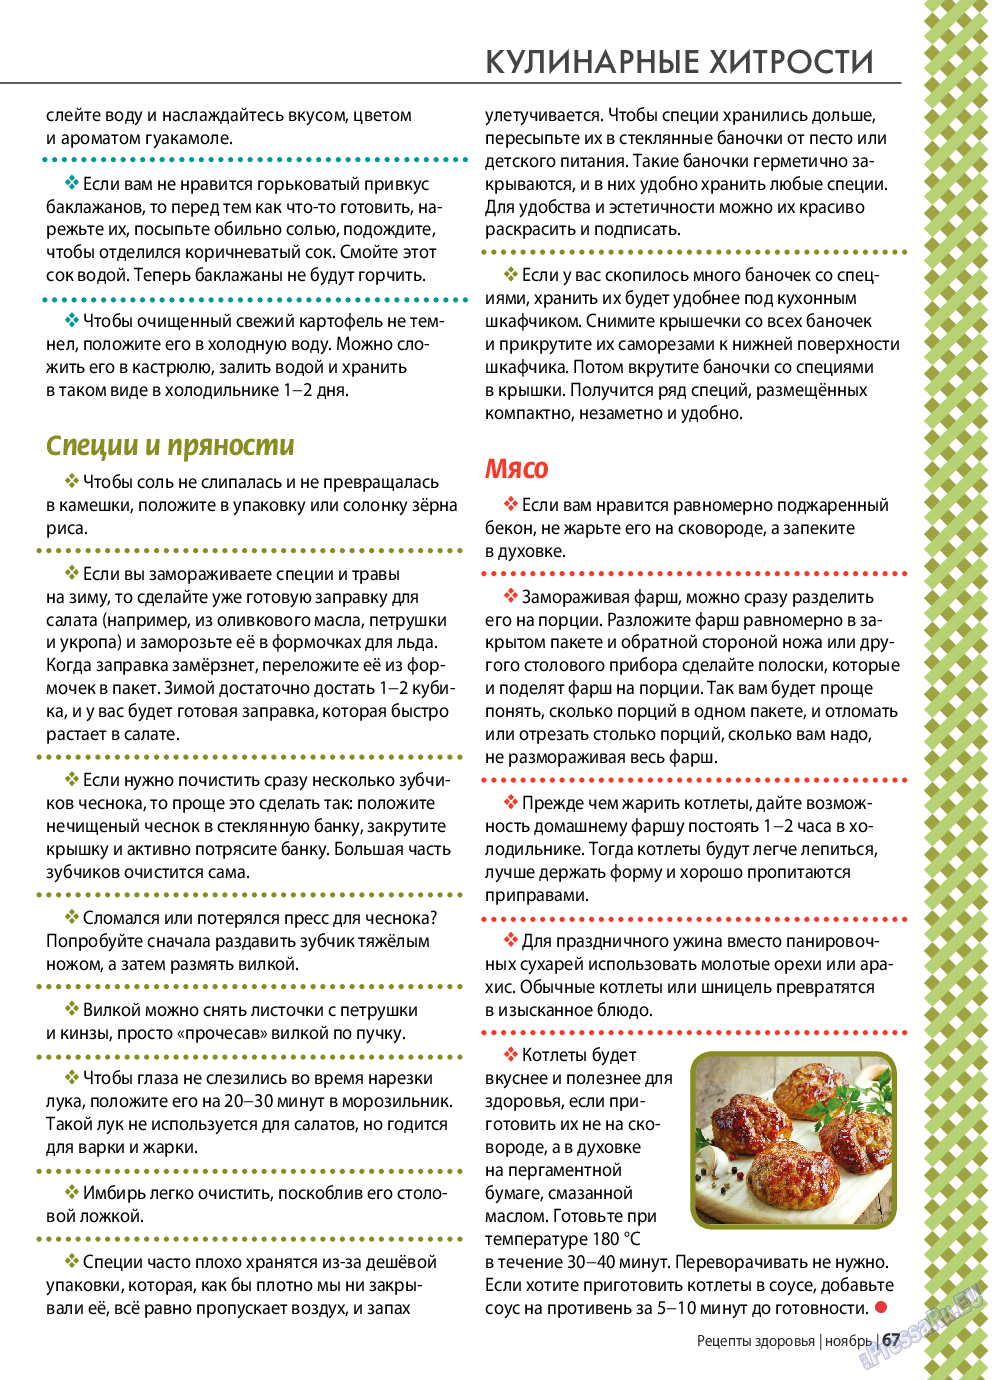 Рецепты здоровья, журнал. 2020 №138 стр.67